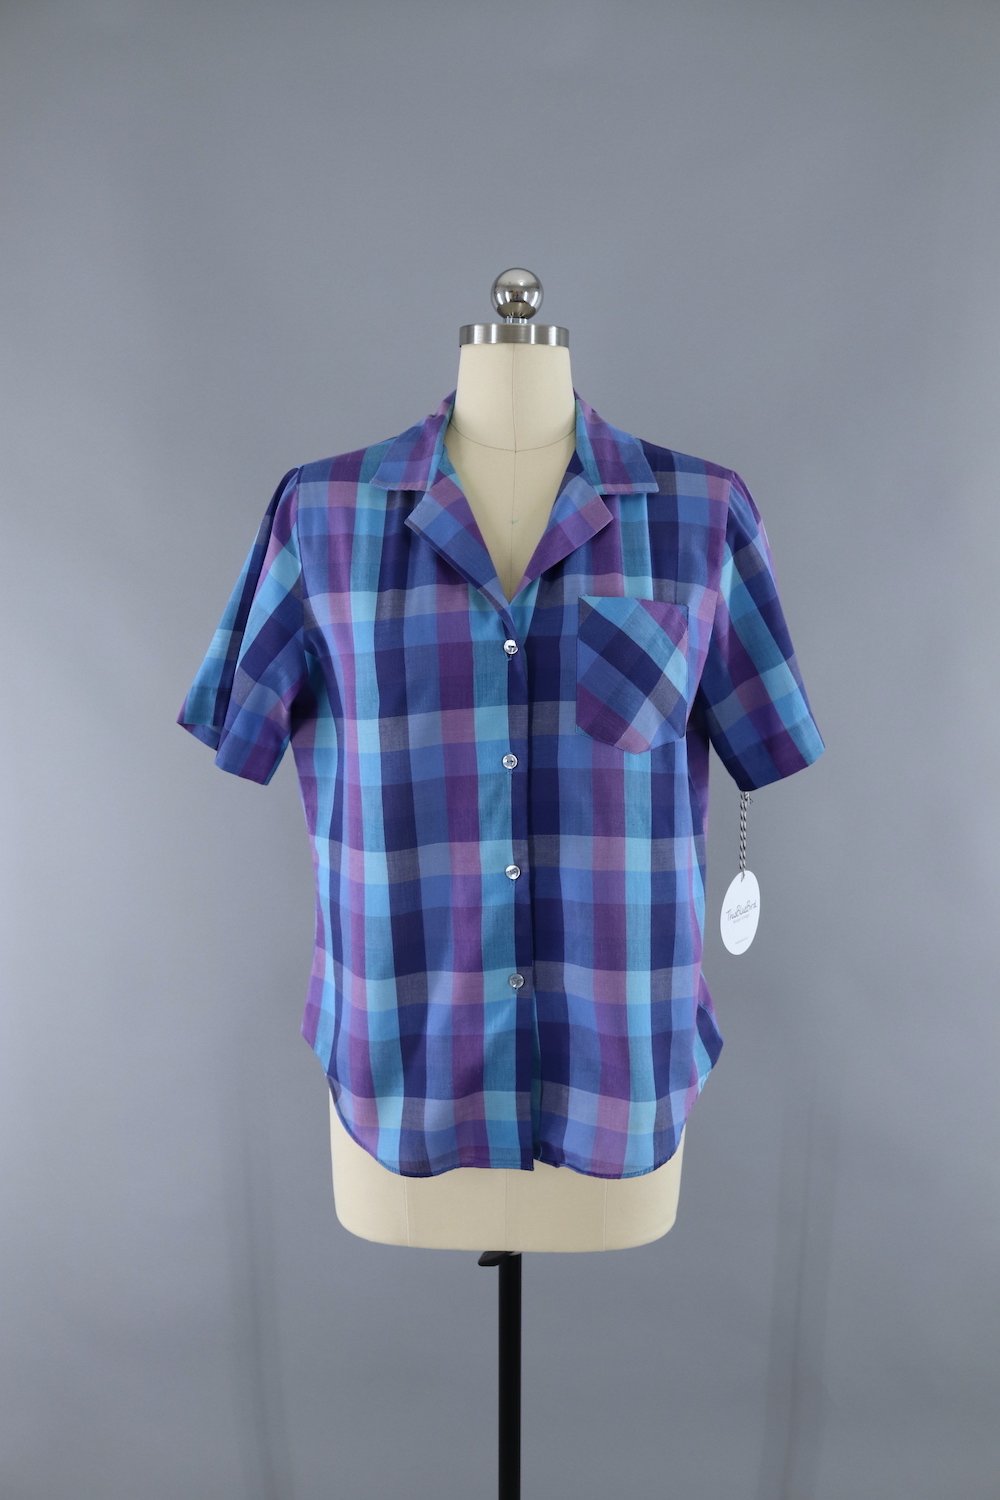 Vintage Blue and Purple Plaid Shirt – ThisBlueBird